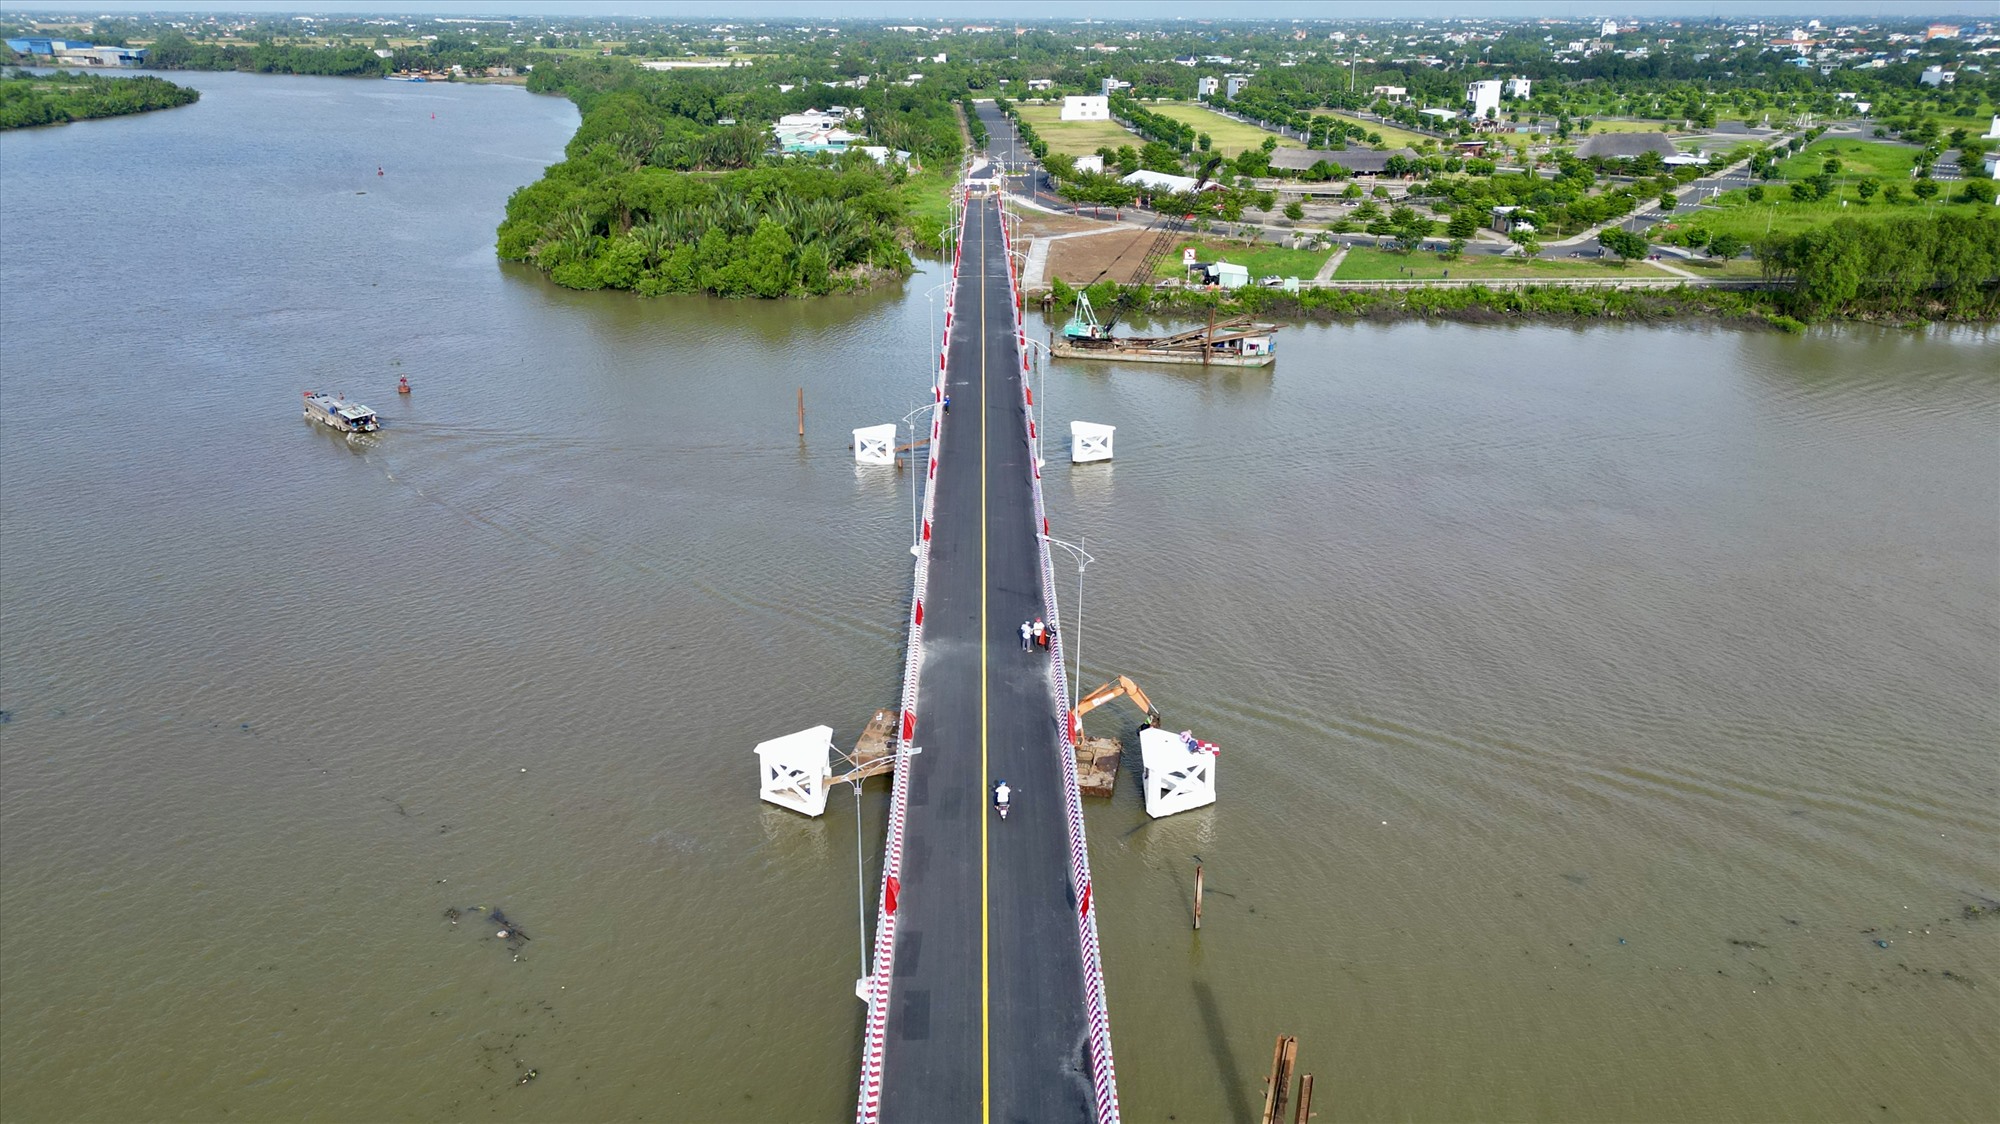 Chiều dài cầu 417 m, bề rộng toàn cầu 8 m, đường dẫn vào cầu có tổng chiều dài 184 m, tải trọng trục thiết kế 10 tấn, bao gồm hai làn xe hỗn hợp.